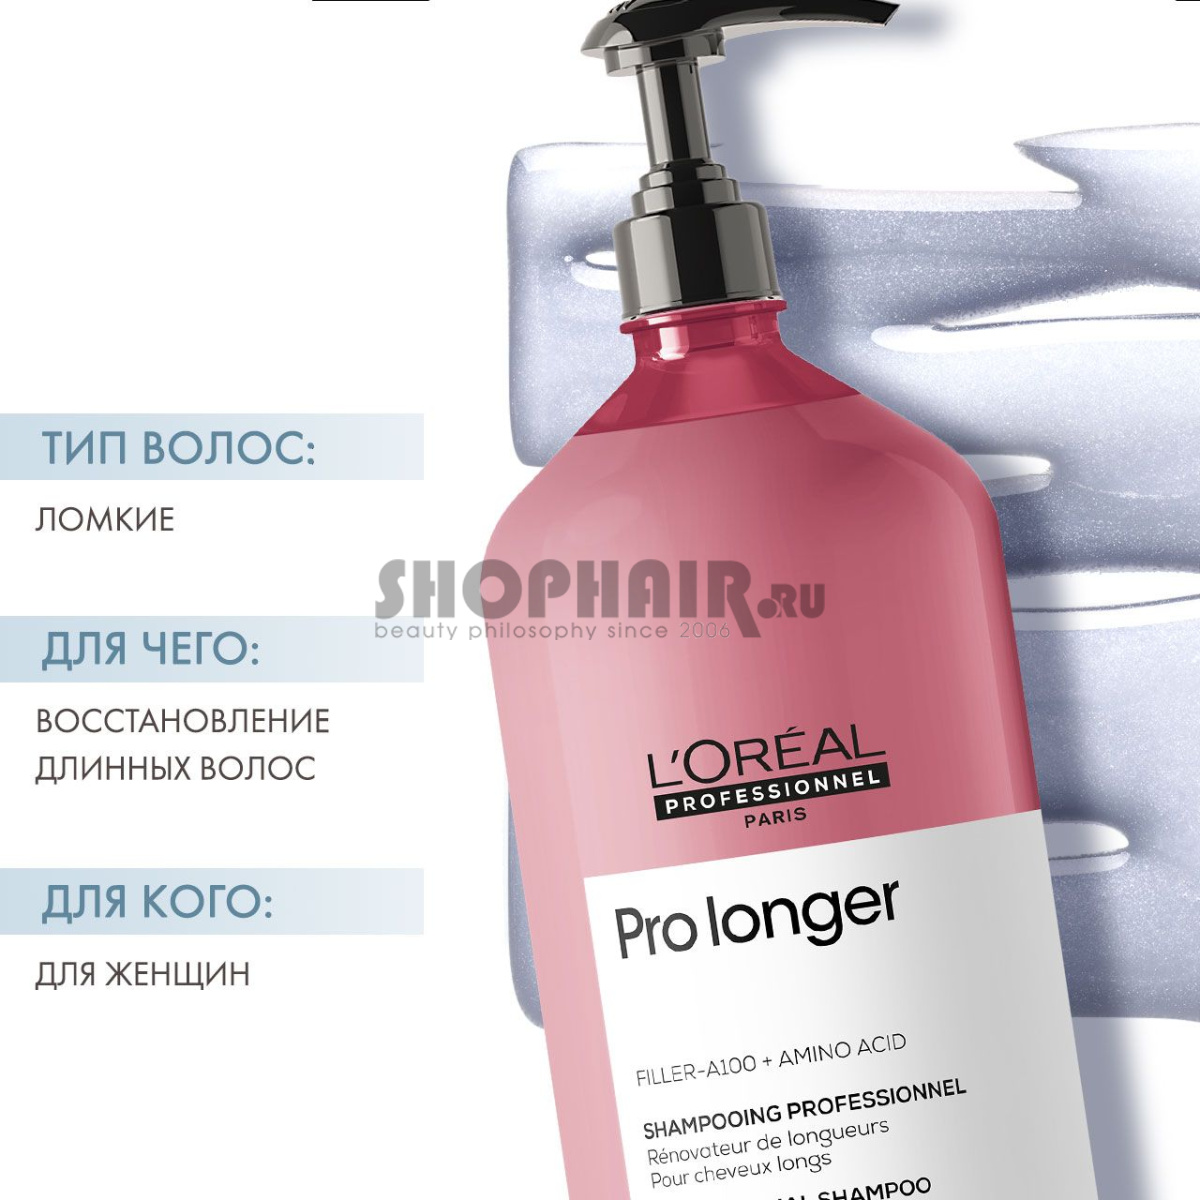 L'Oreal Professionnel Pro Longer - Шампунь для восстановления волос по длине 1500 мл L'Oreal Professionnel (Франция) купить по цене 3 261 руб.